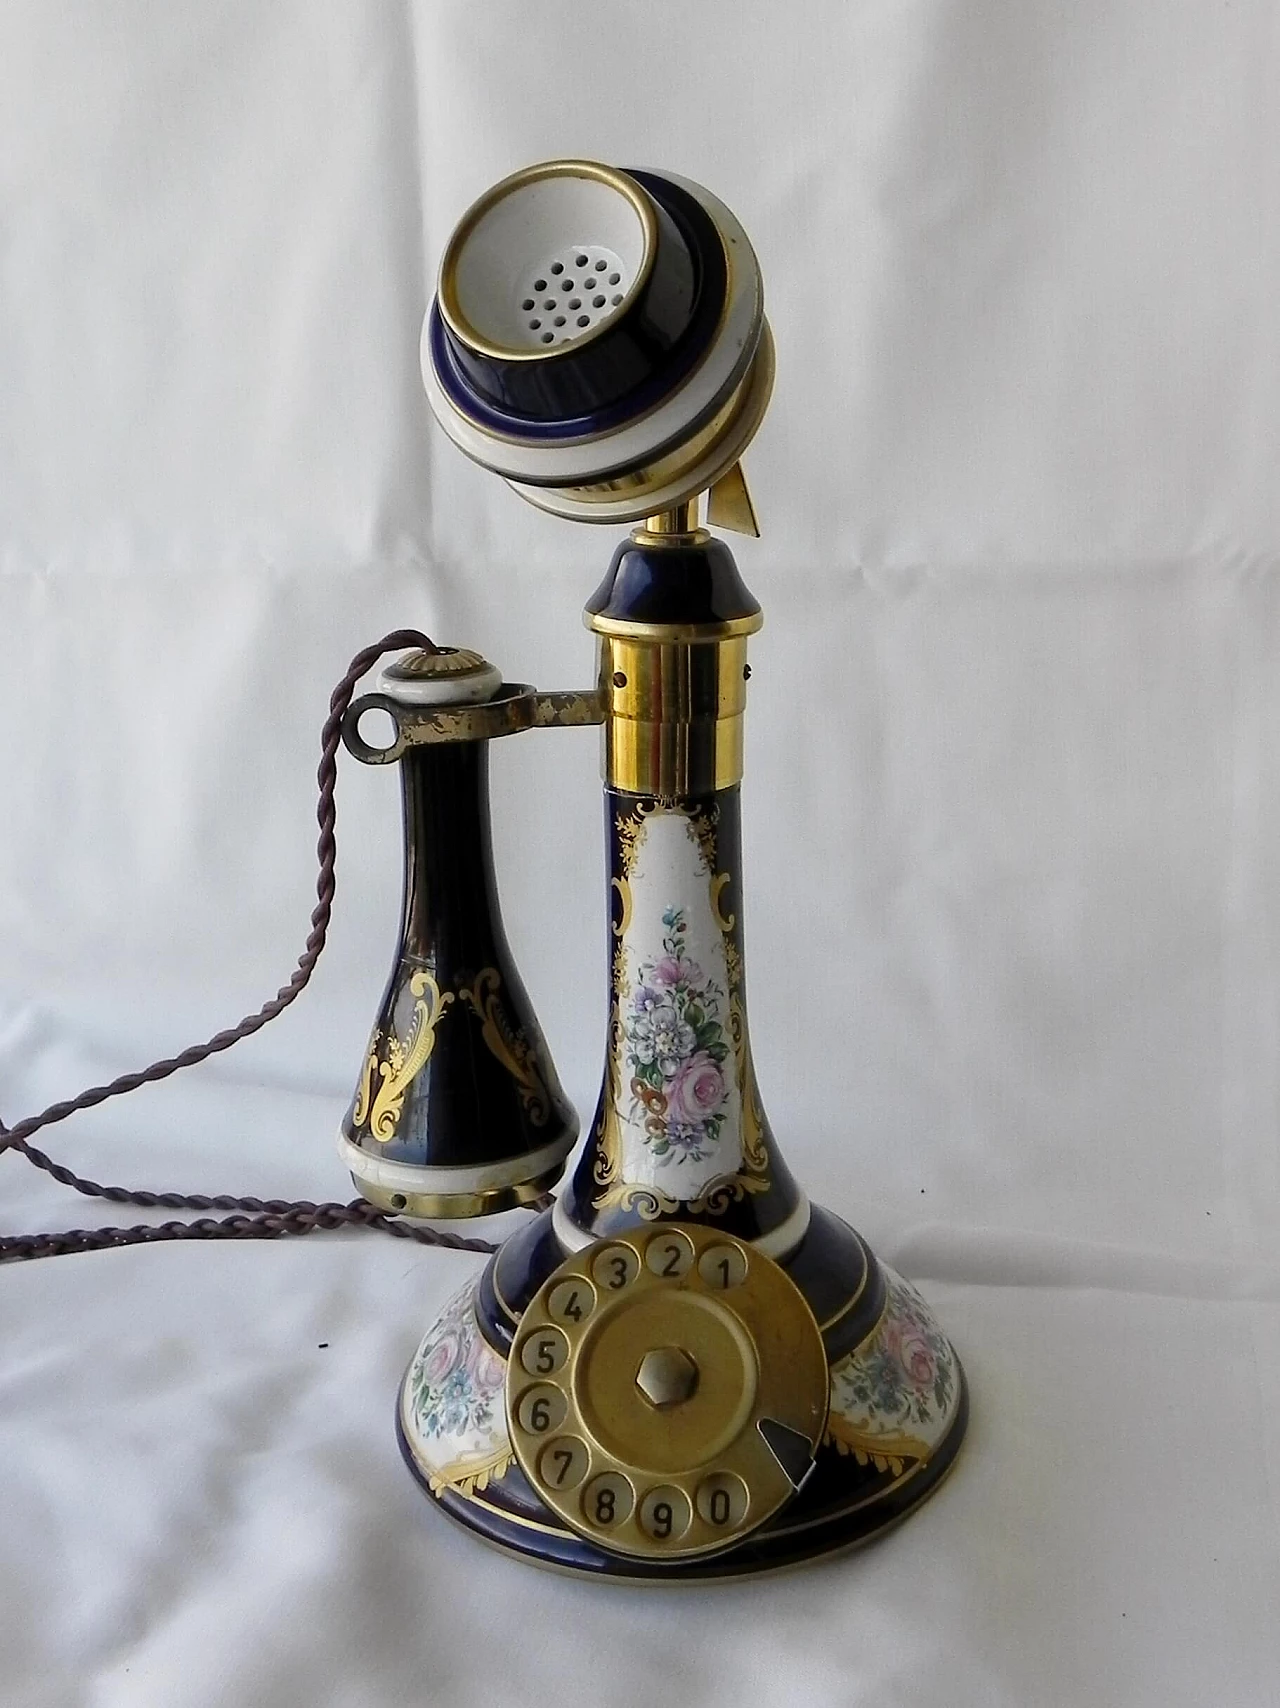 Limoges ceramic phone 1151161